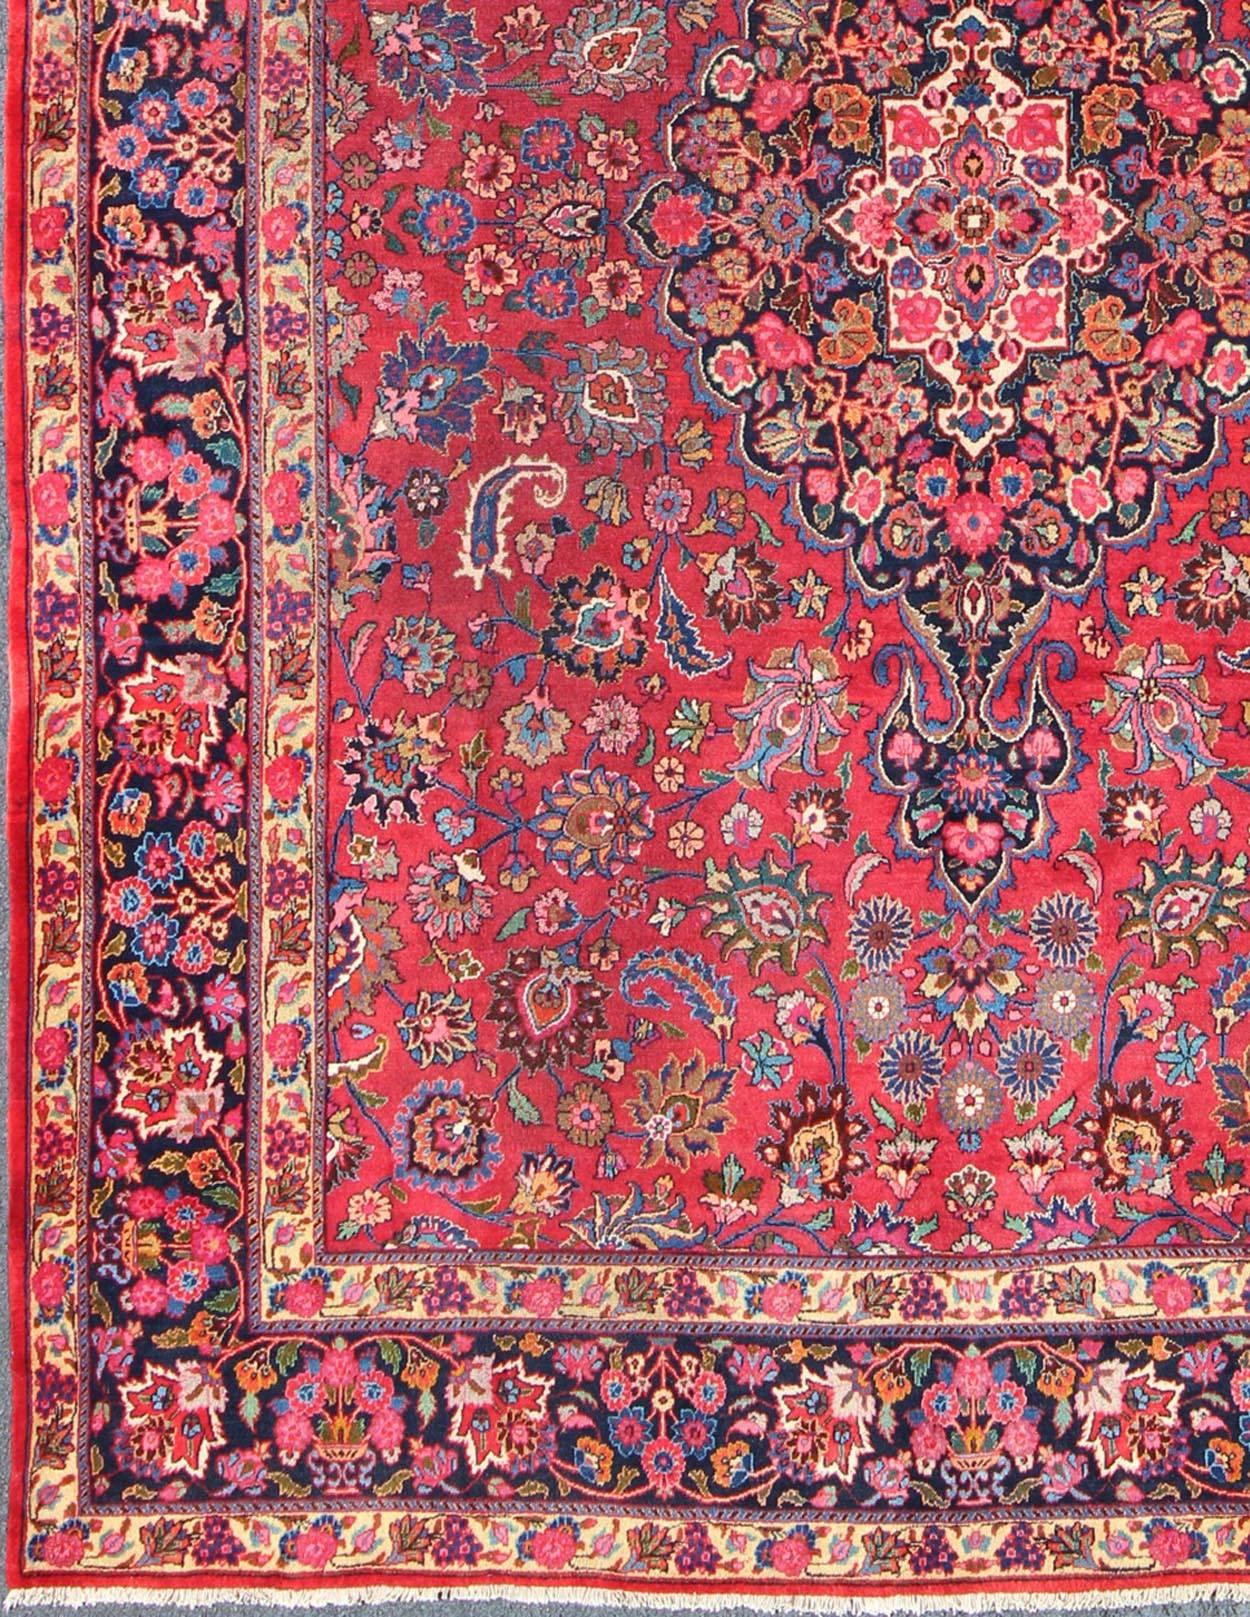 Antiker persischer Maschhad-Teppich mit kunstvollem floralem Medaillon-Muster in Rot und Nachtblau, Teppich h-409-11, Herkunftsland / Typ: Iran / Mashhad, um 1950

Dieser hochdekorative und kunstvolle alte persische Mashhad-Teppich zeichnet sich